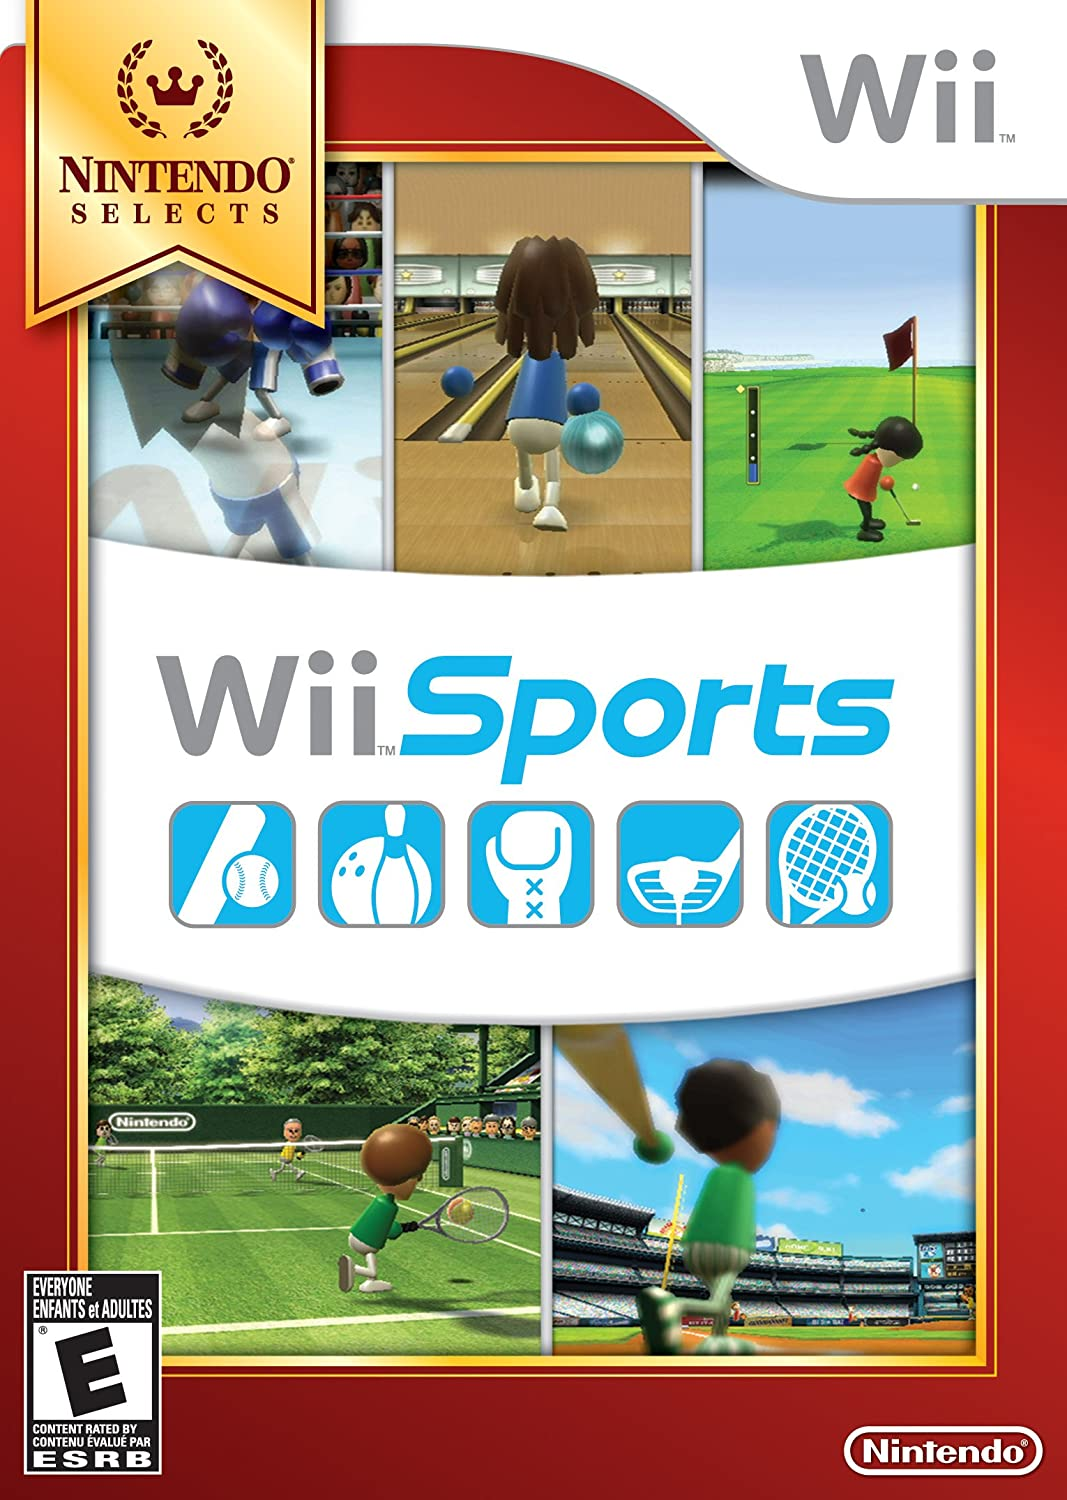 Nintendo Switch Sports vs Wii Sports